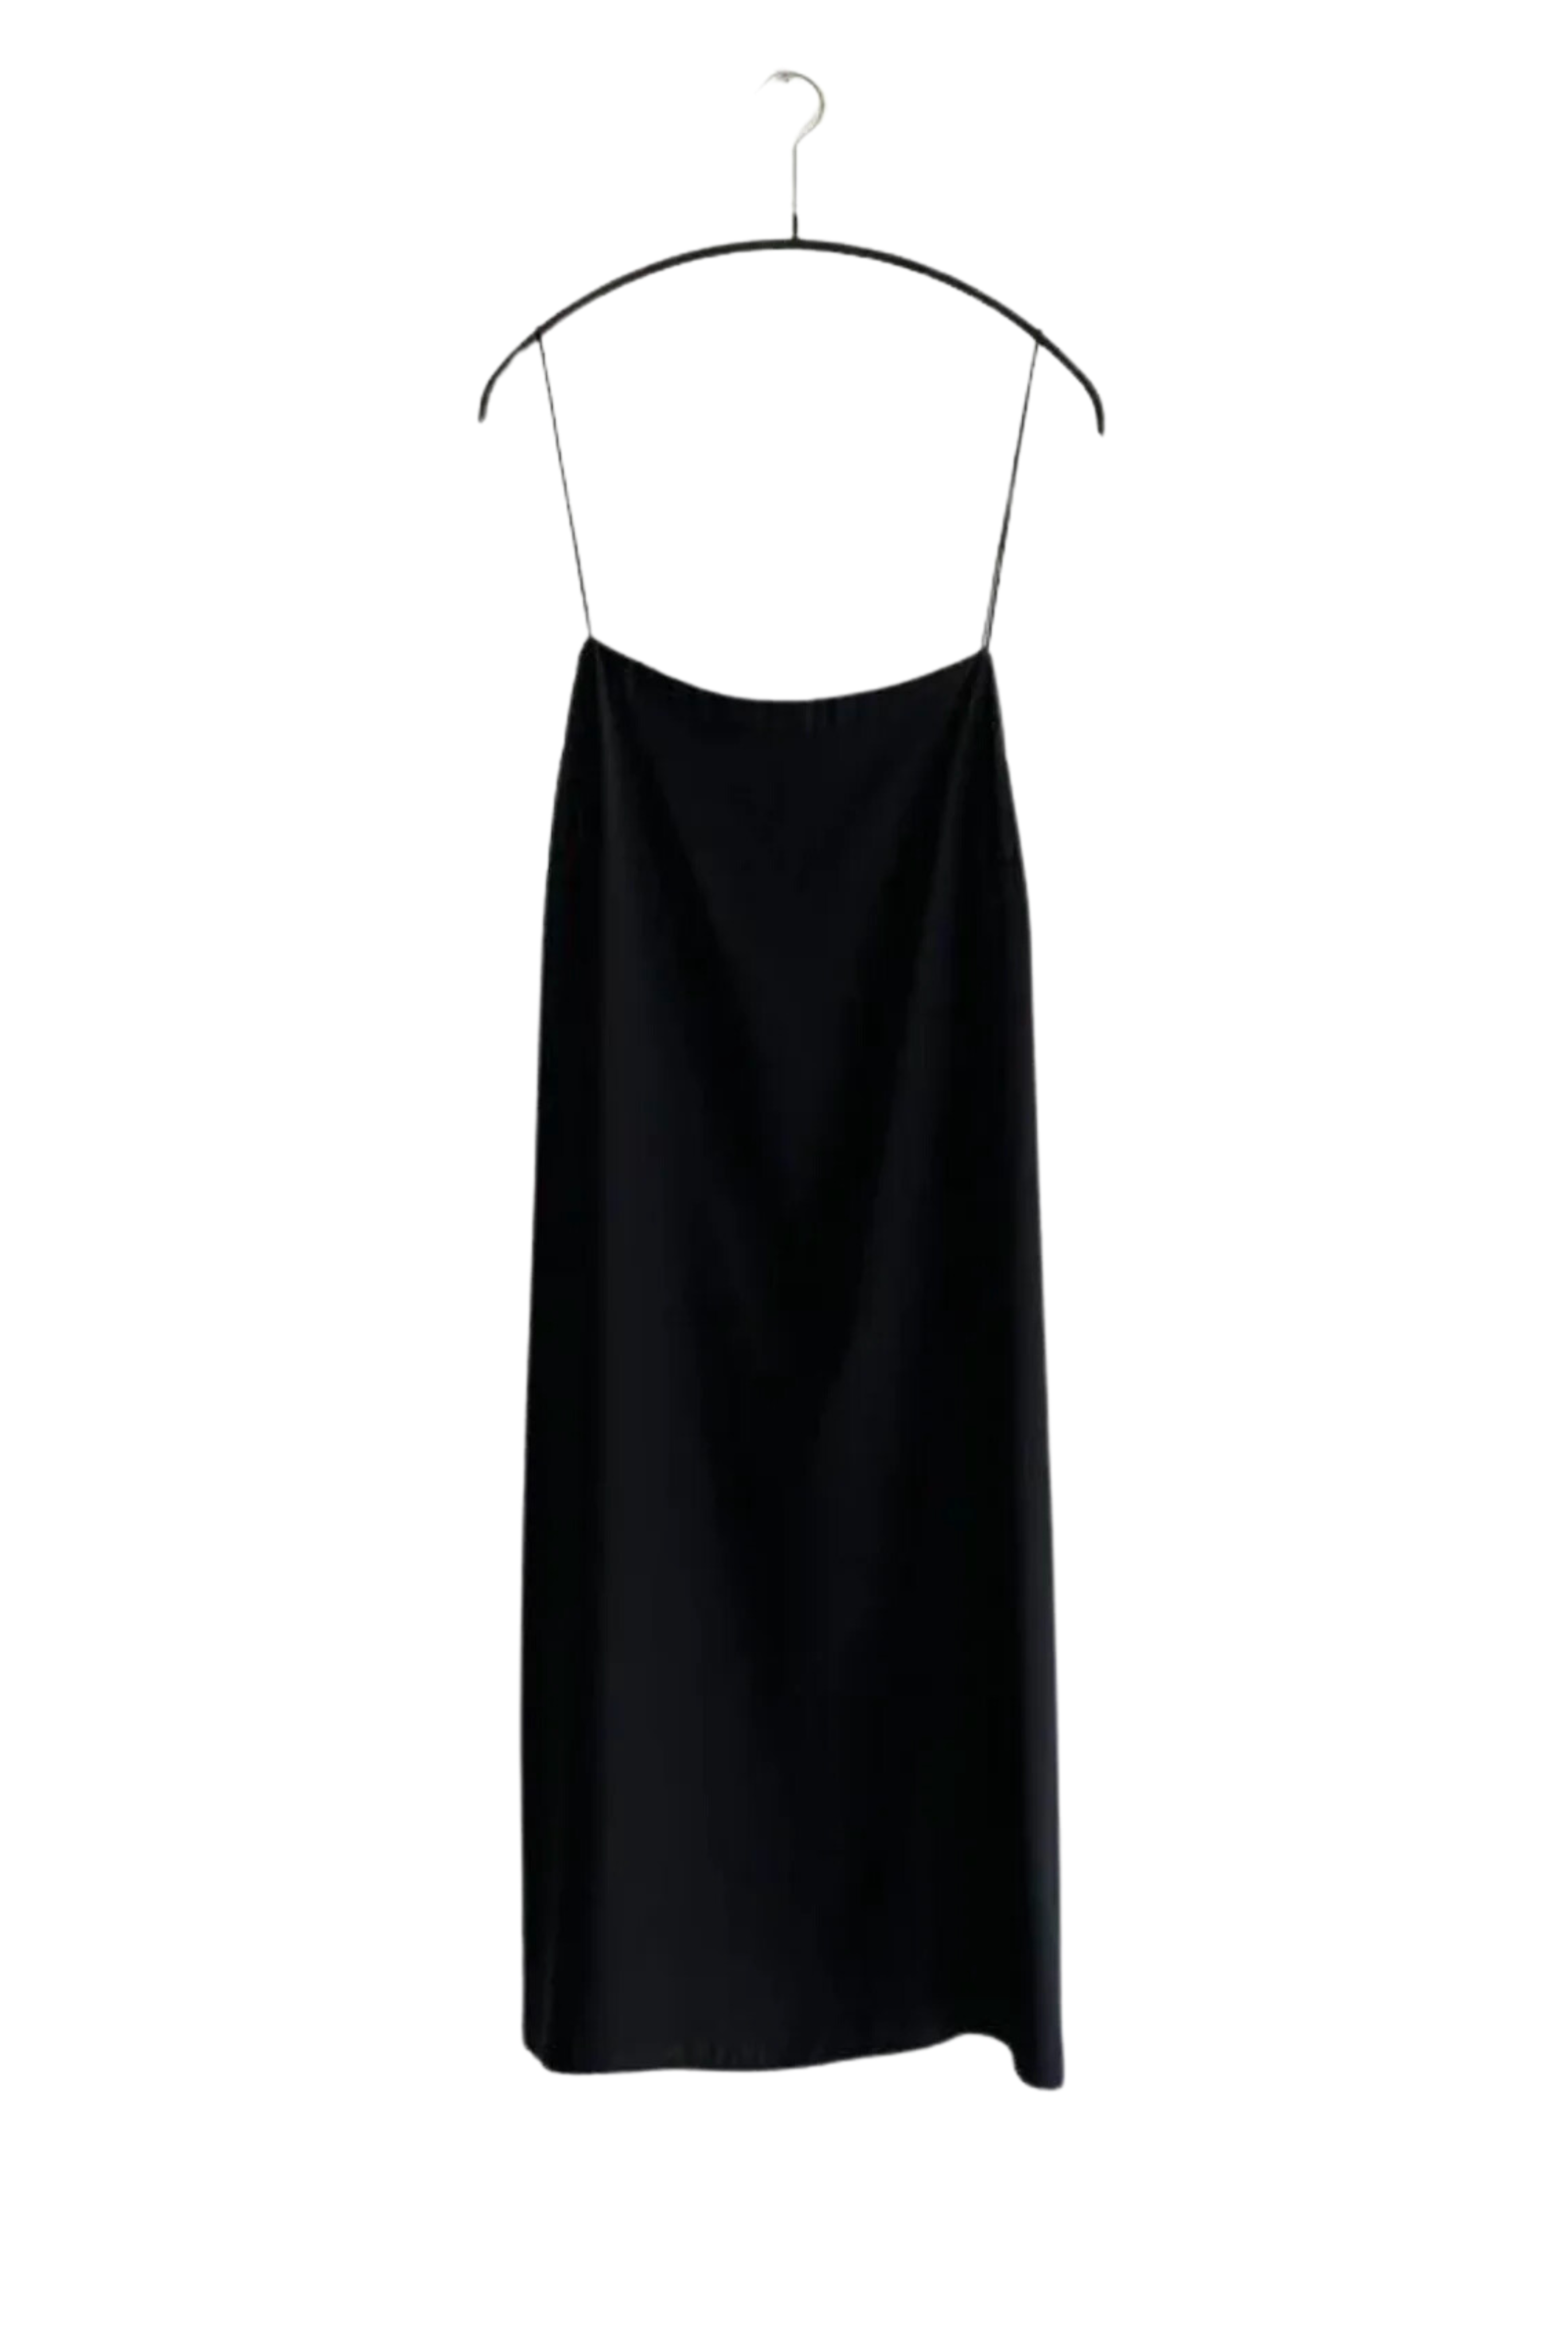 KAMPERETT Short Silk Slip Dress in Black